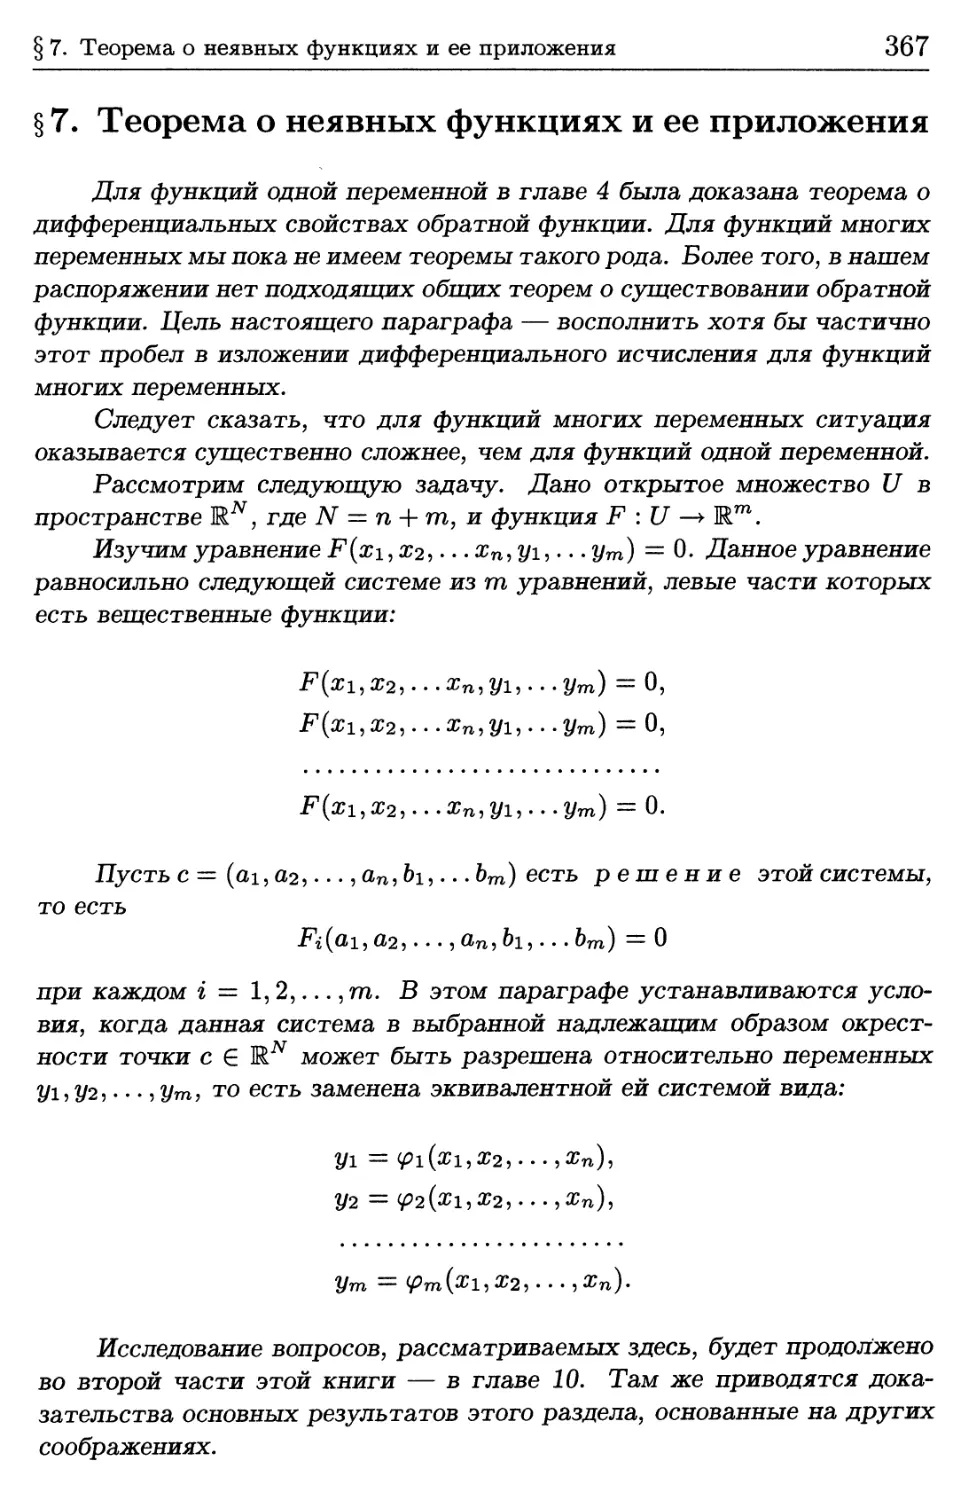 § 7. Теорема о неявных функциях и ее приложения